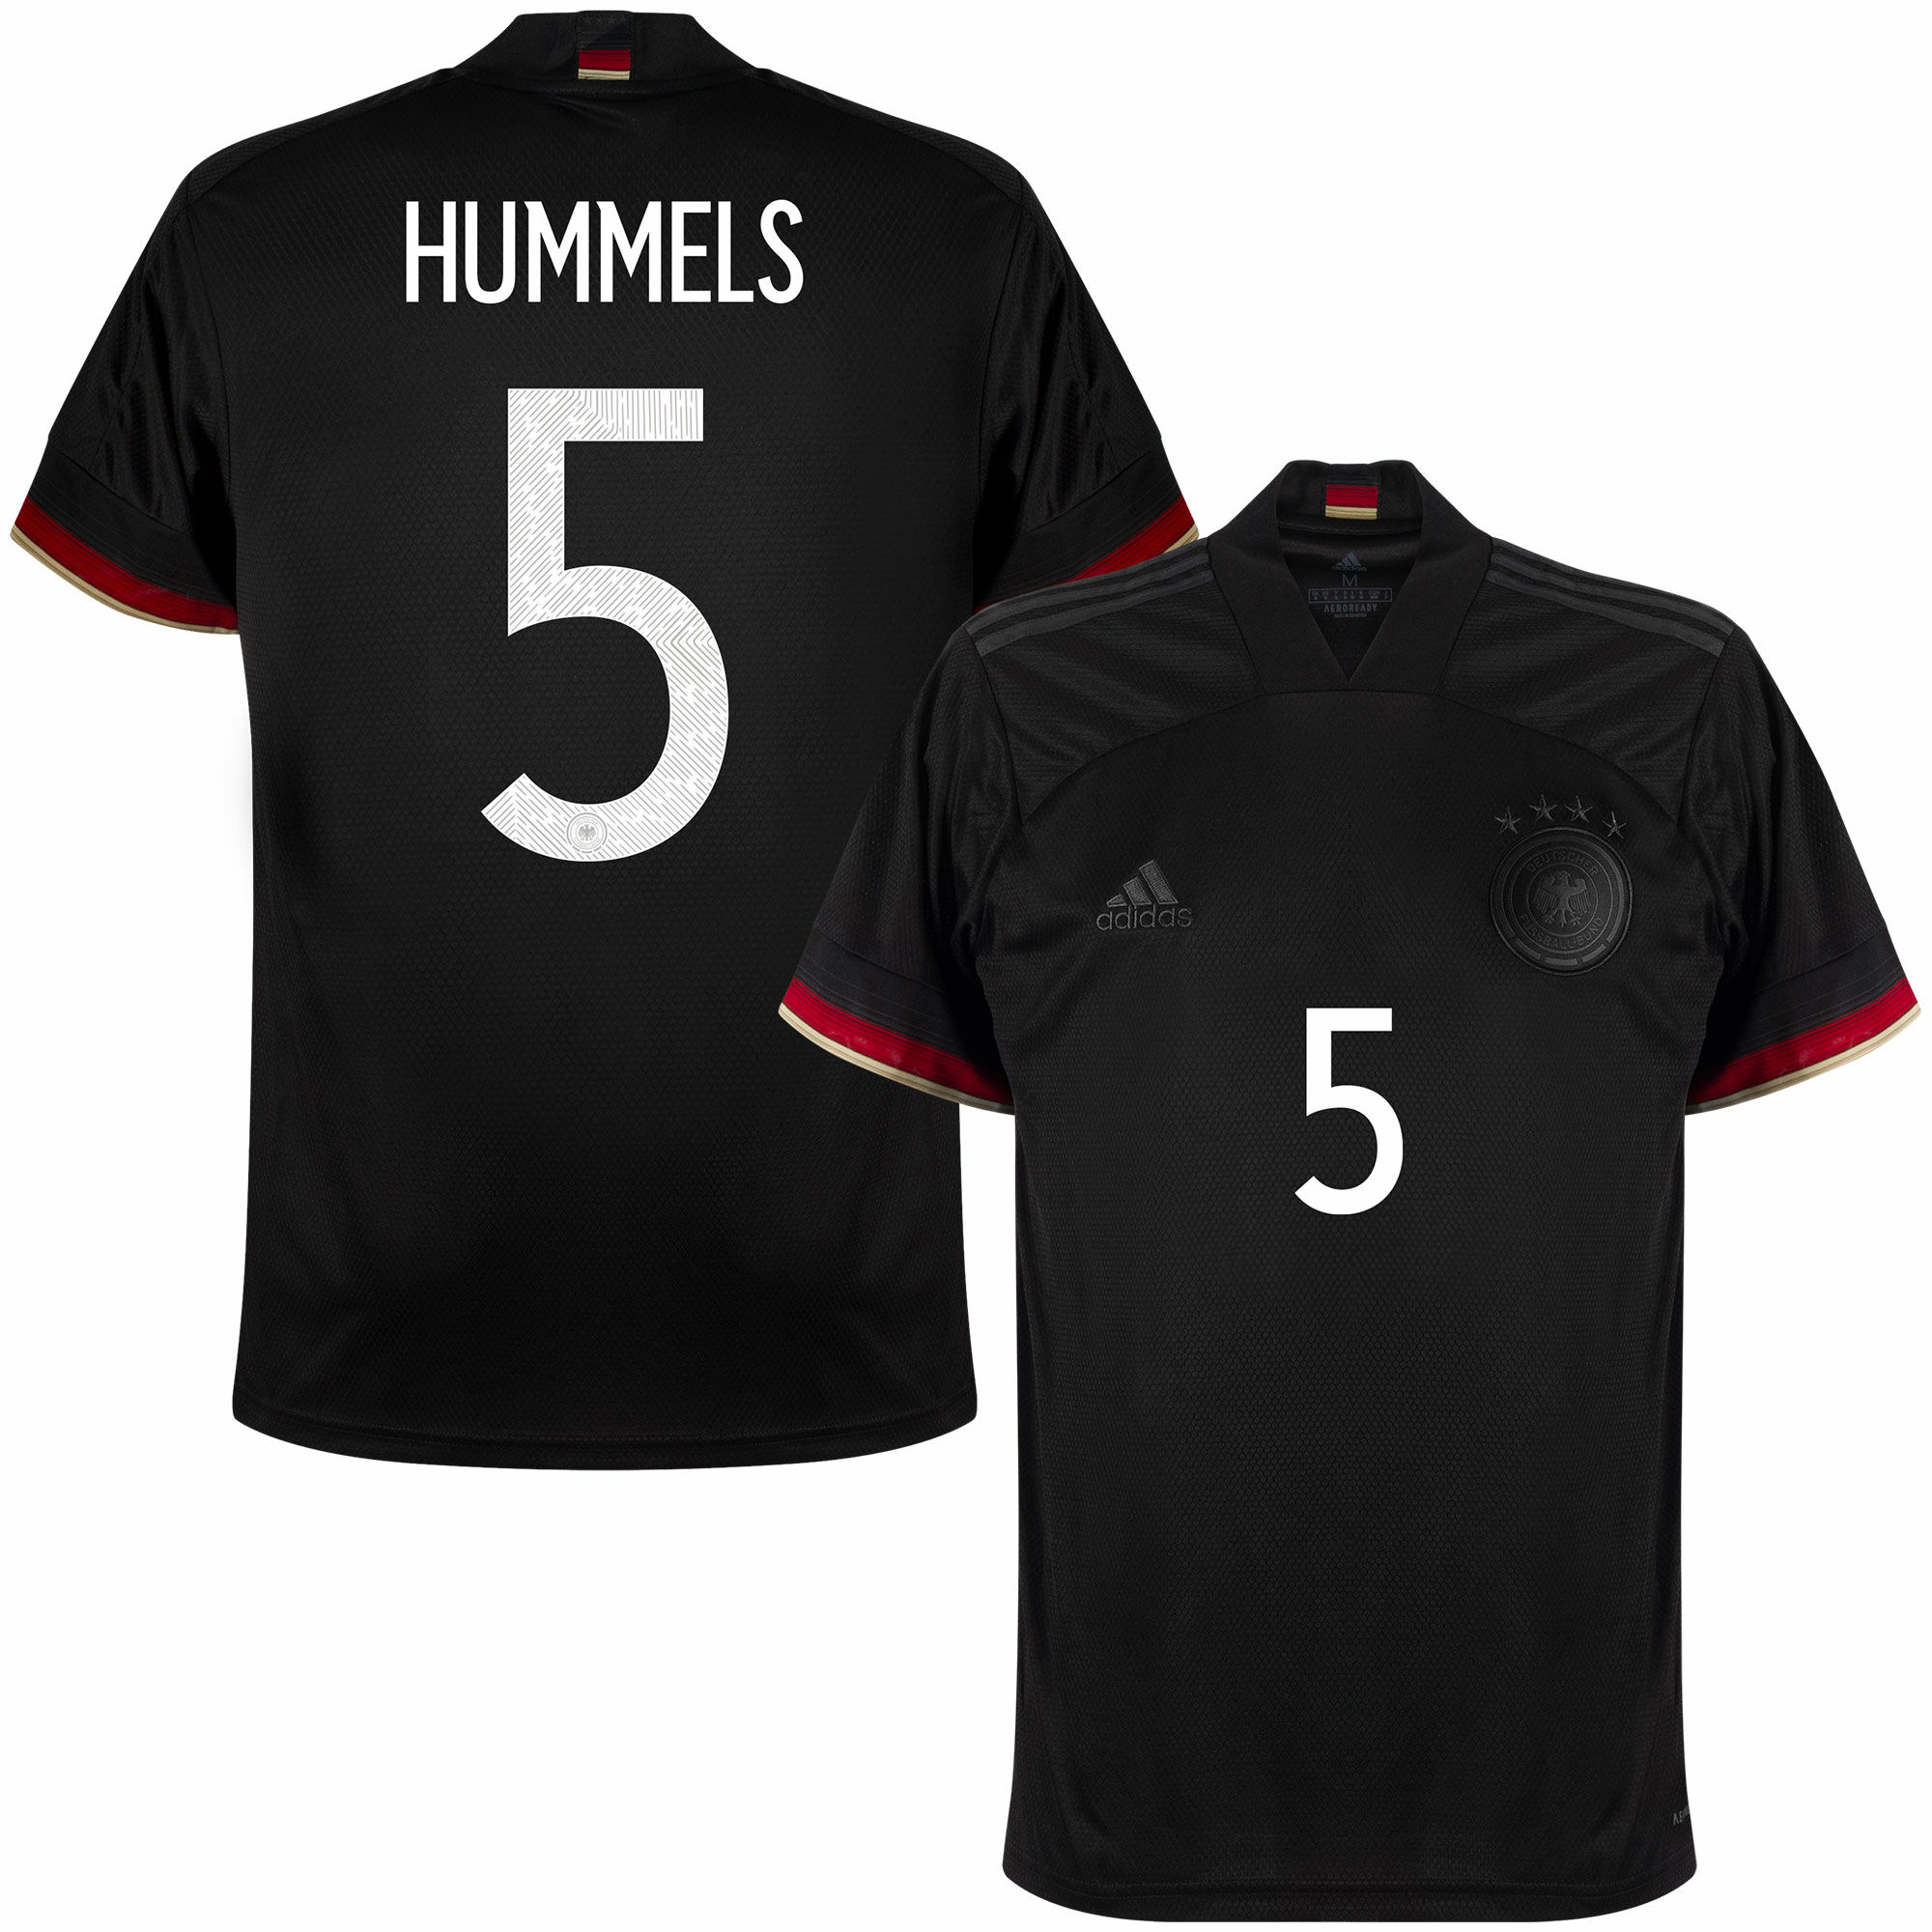 Německo - Dres fotbalový - sezóna 2021/22, černý, Mats Hummels, venkovní, číslo 5